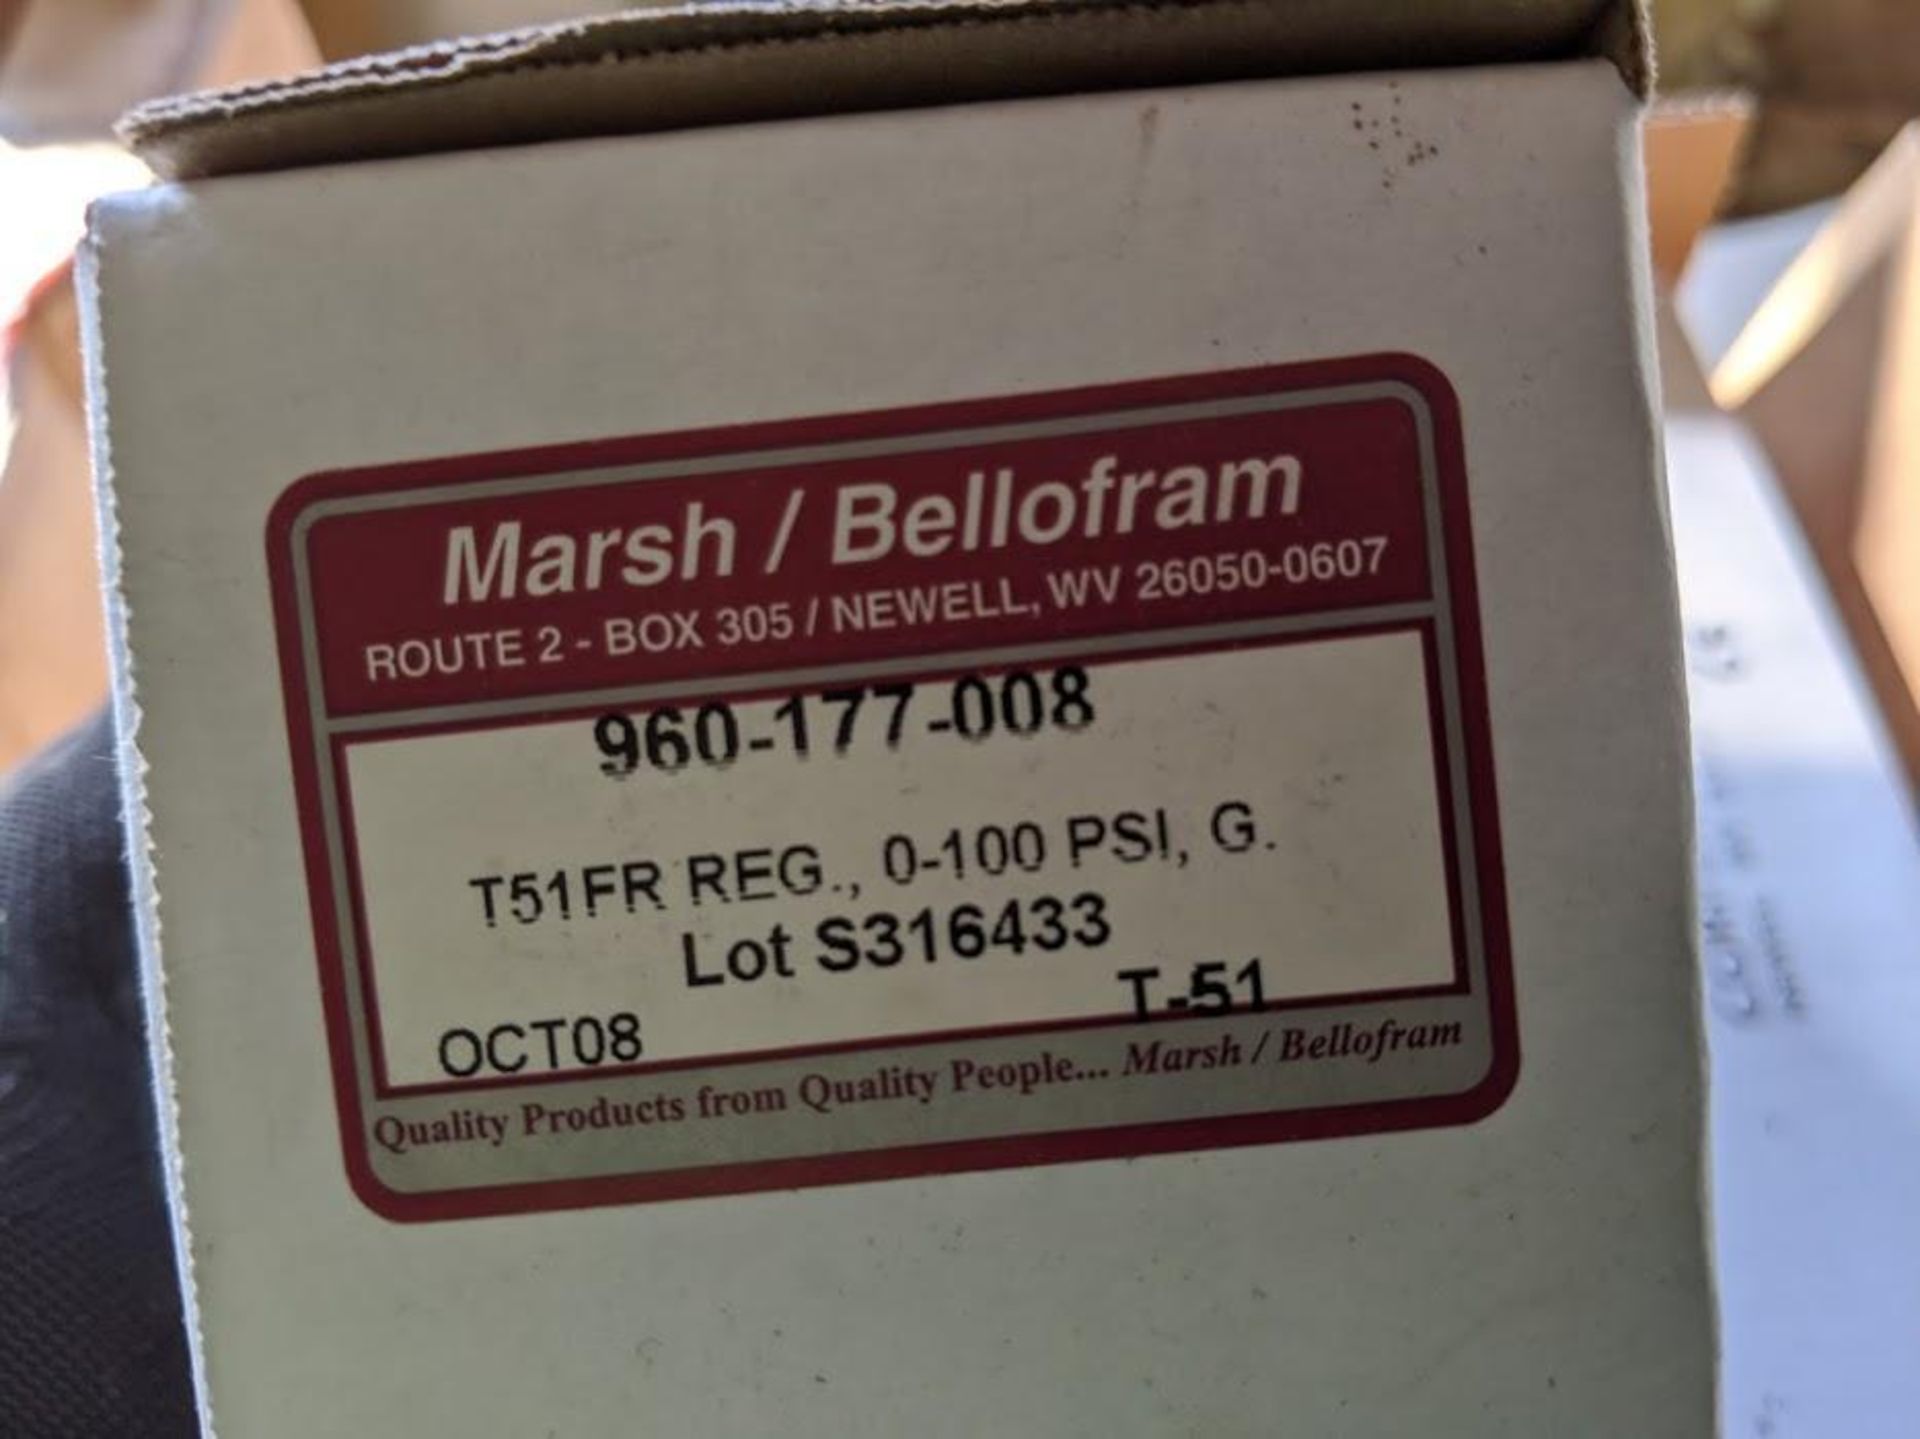 LOT OF 10 MARSH / BELLOFRAM 960-177-008 T51RF PRESSURE REGULATOR 0-100PSIG - Image 3 of 3